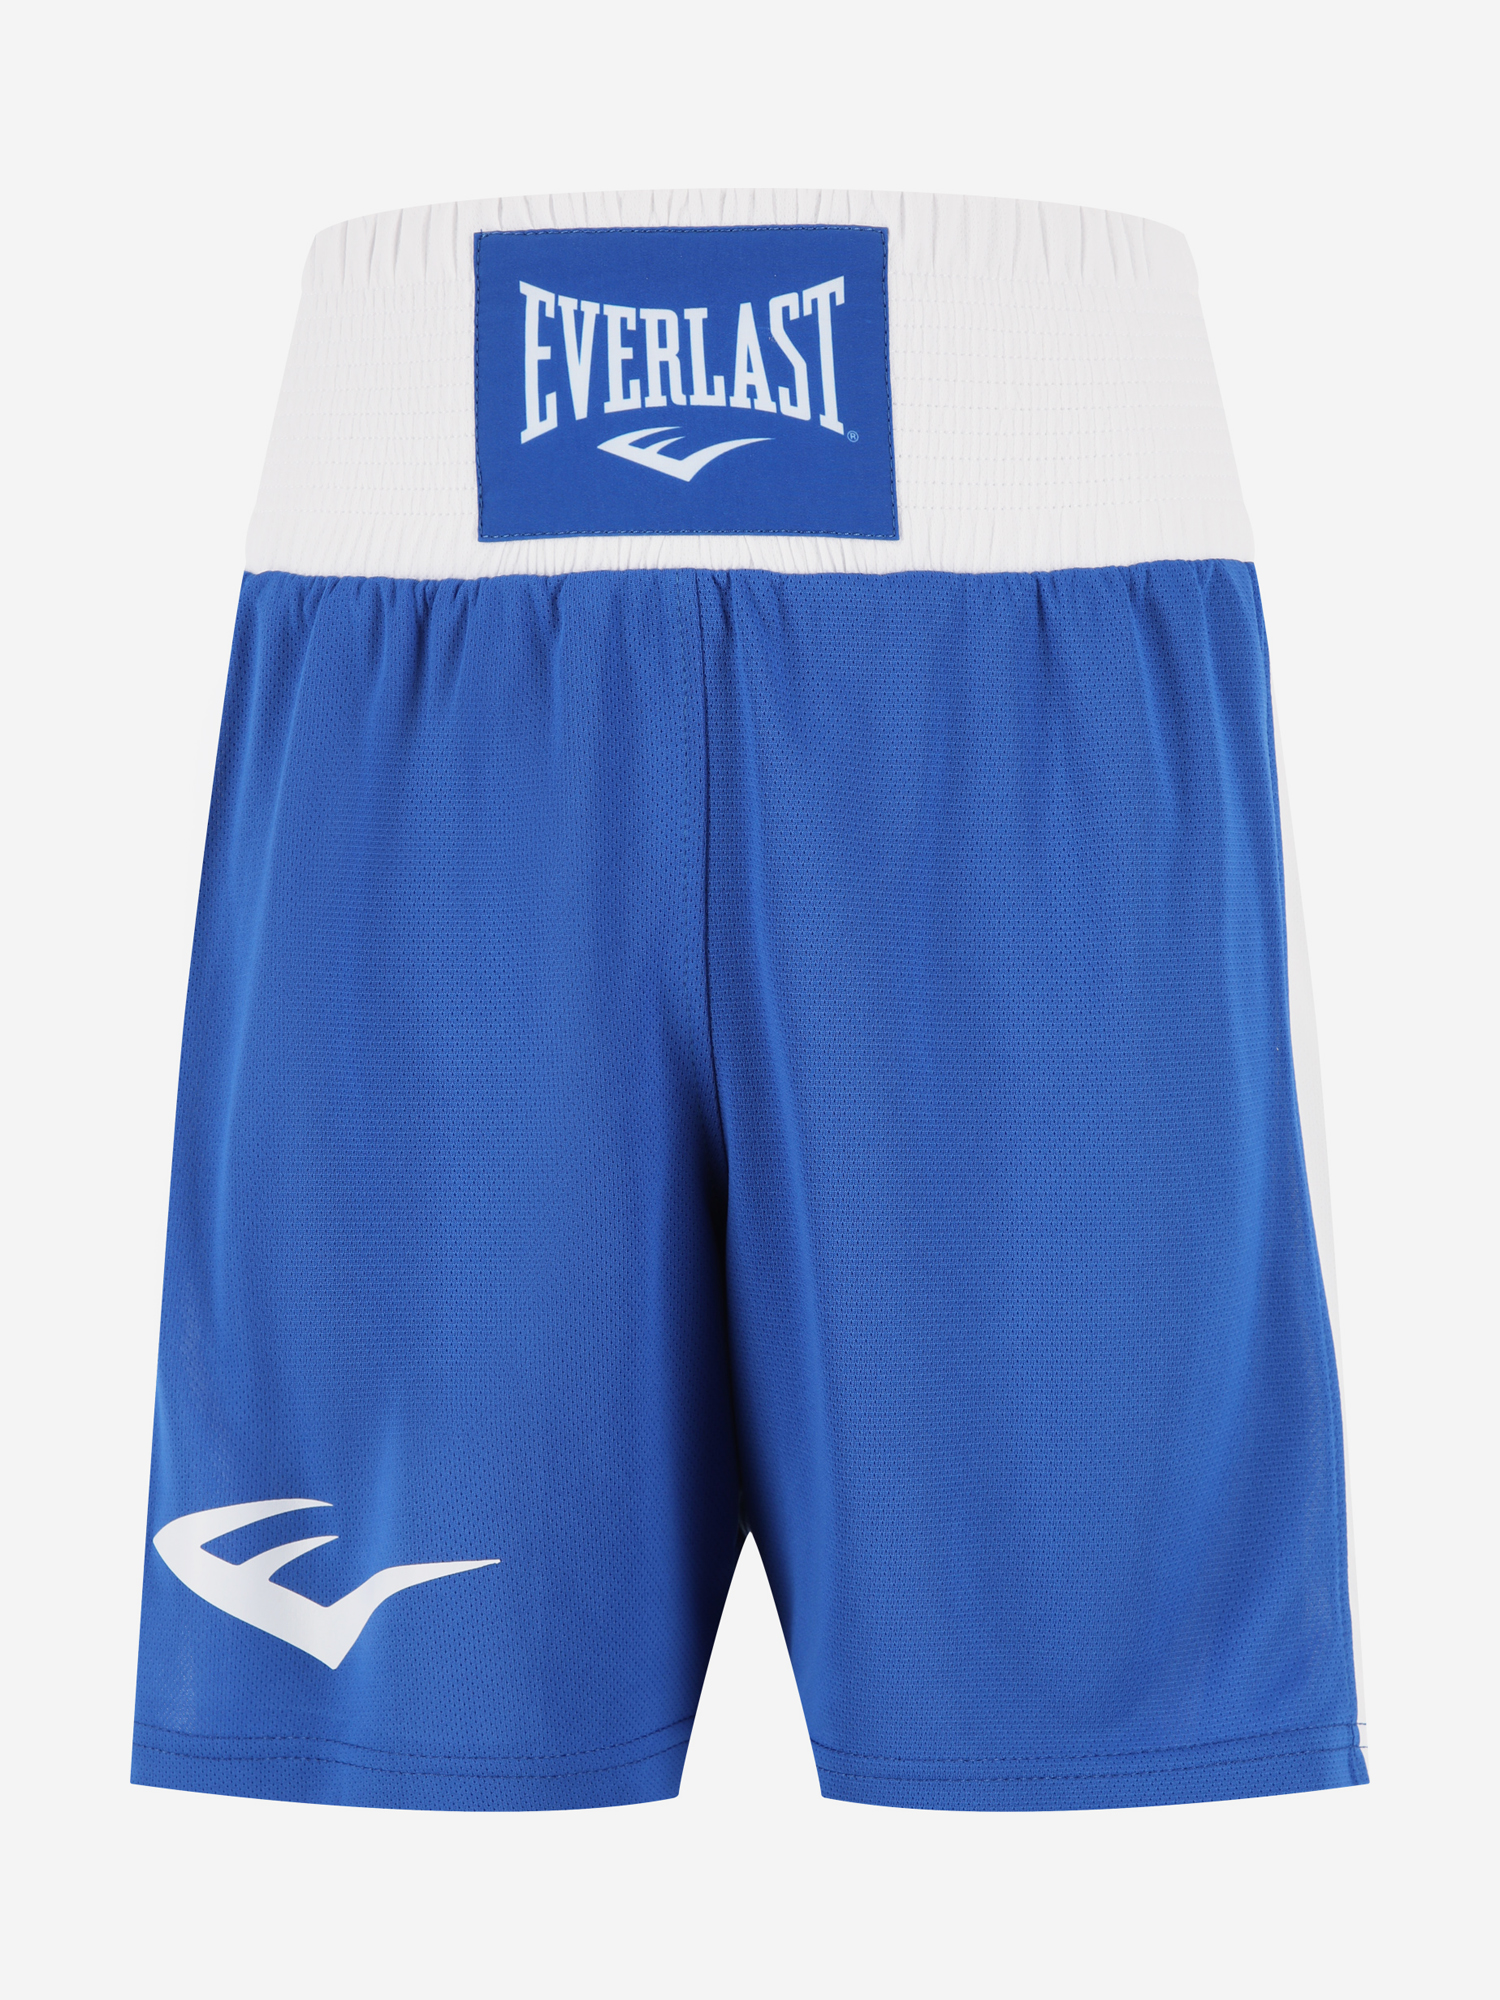 Шорты для бокса детские Everlast Elite, Синий боксерки мужские everlast forceknit синий